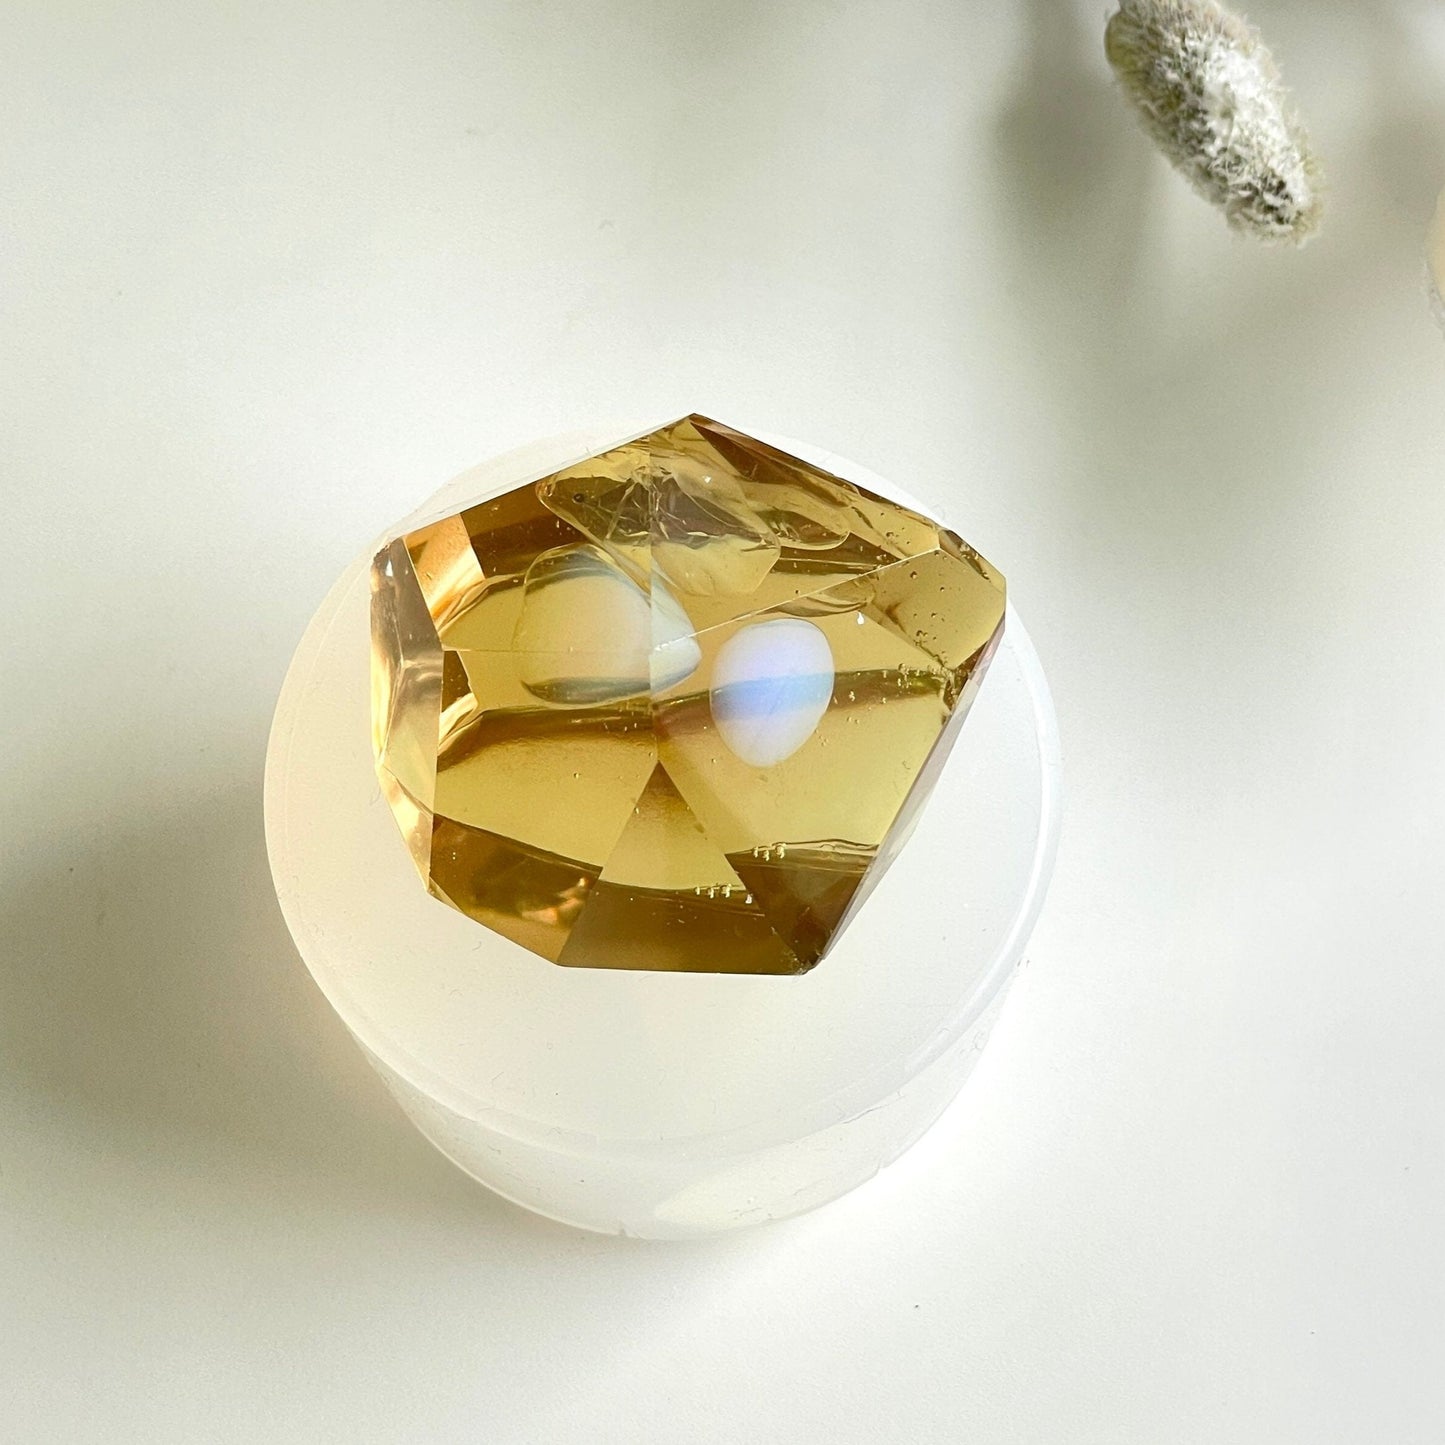 Große Amethyst-Kristall-Silikonform: Schmuckherstellung und personalisierte Geschenke